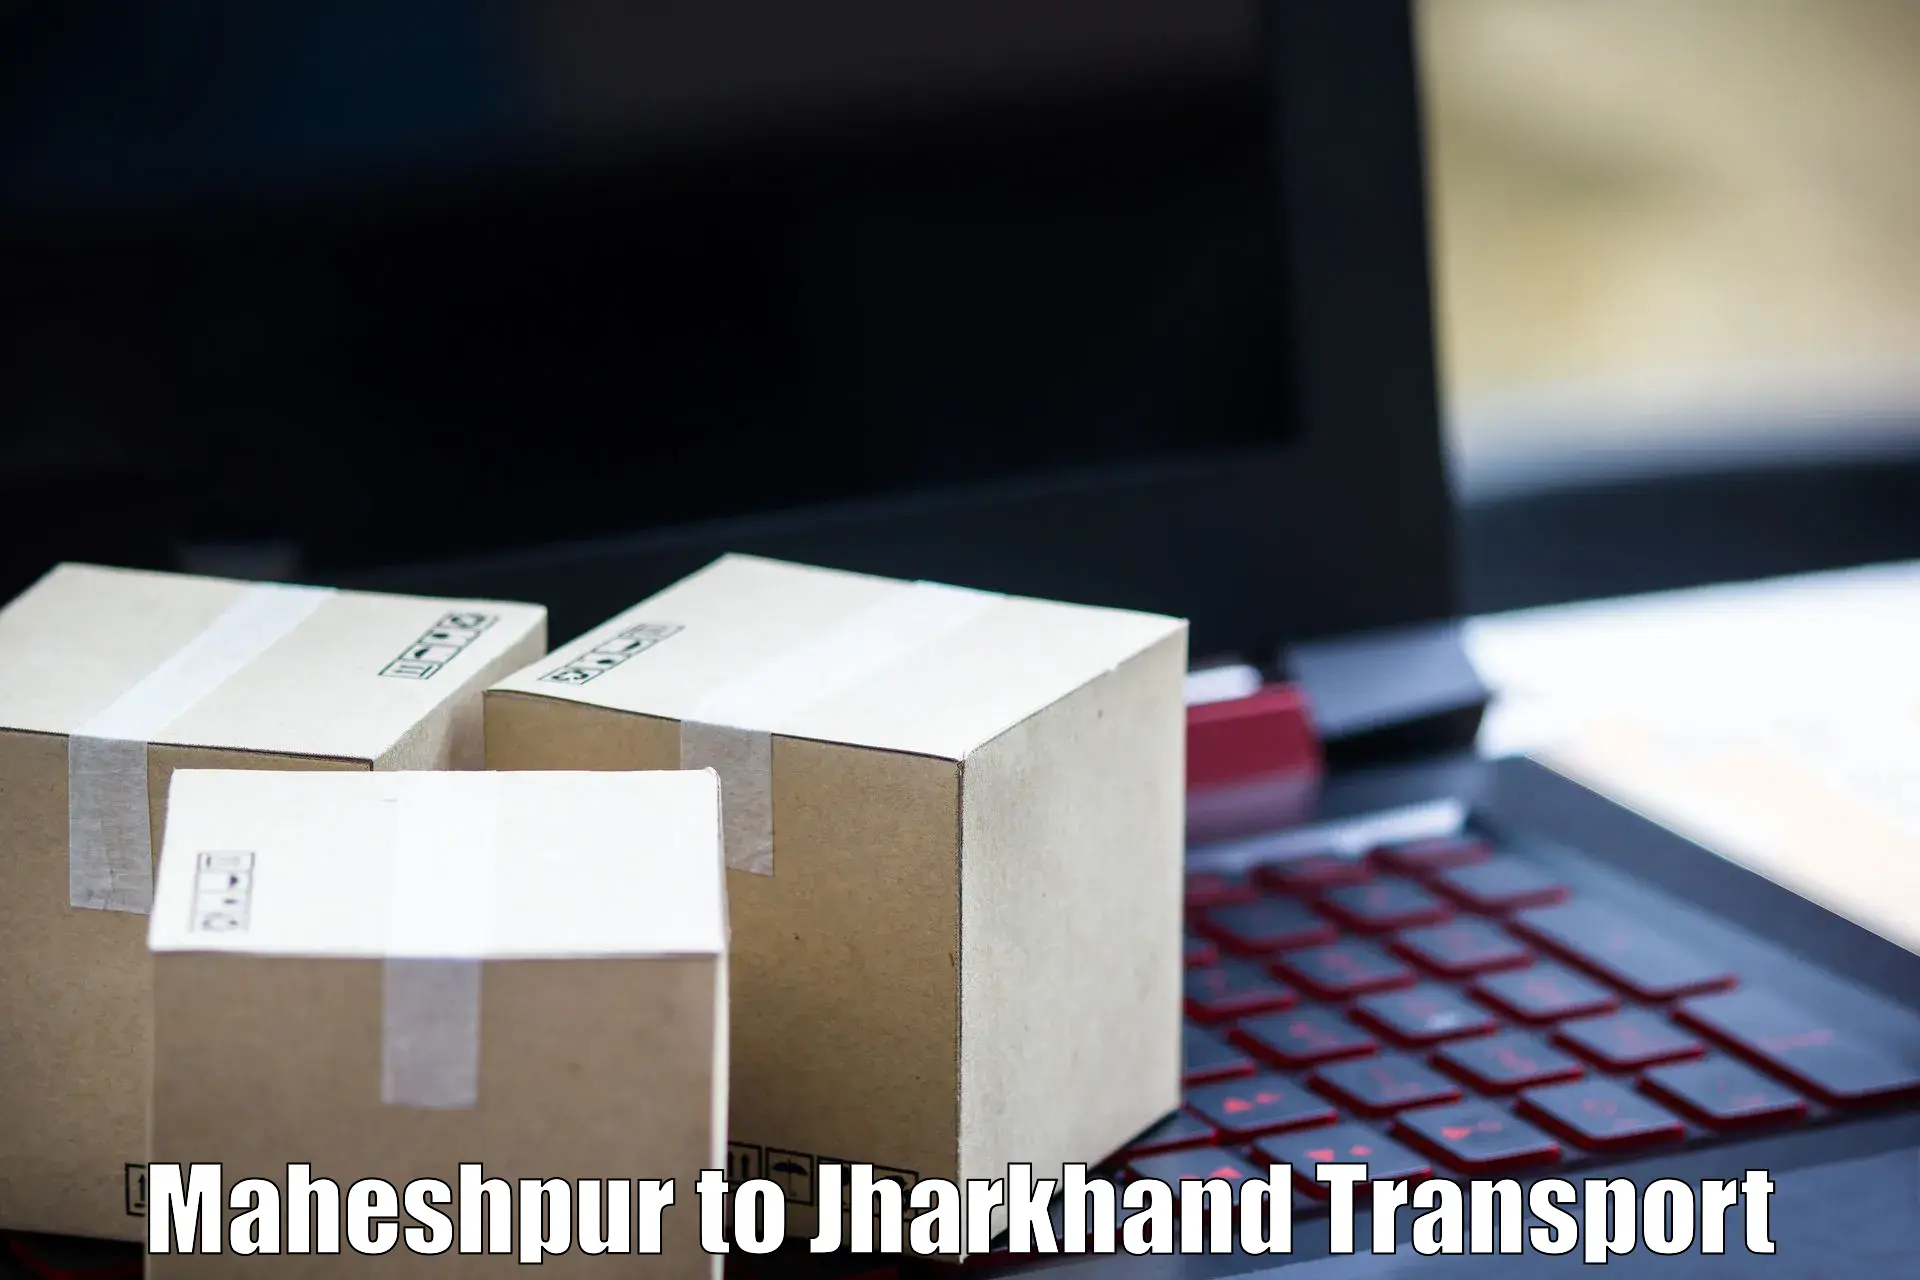 Daily parcel service transport Maheshpur to Seraikela Kharsawan